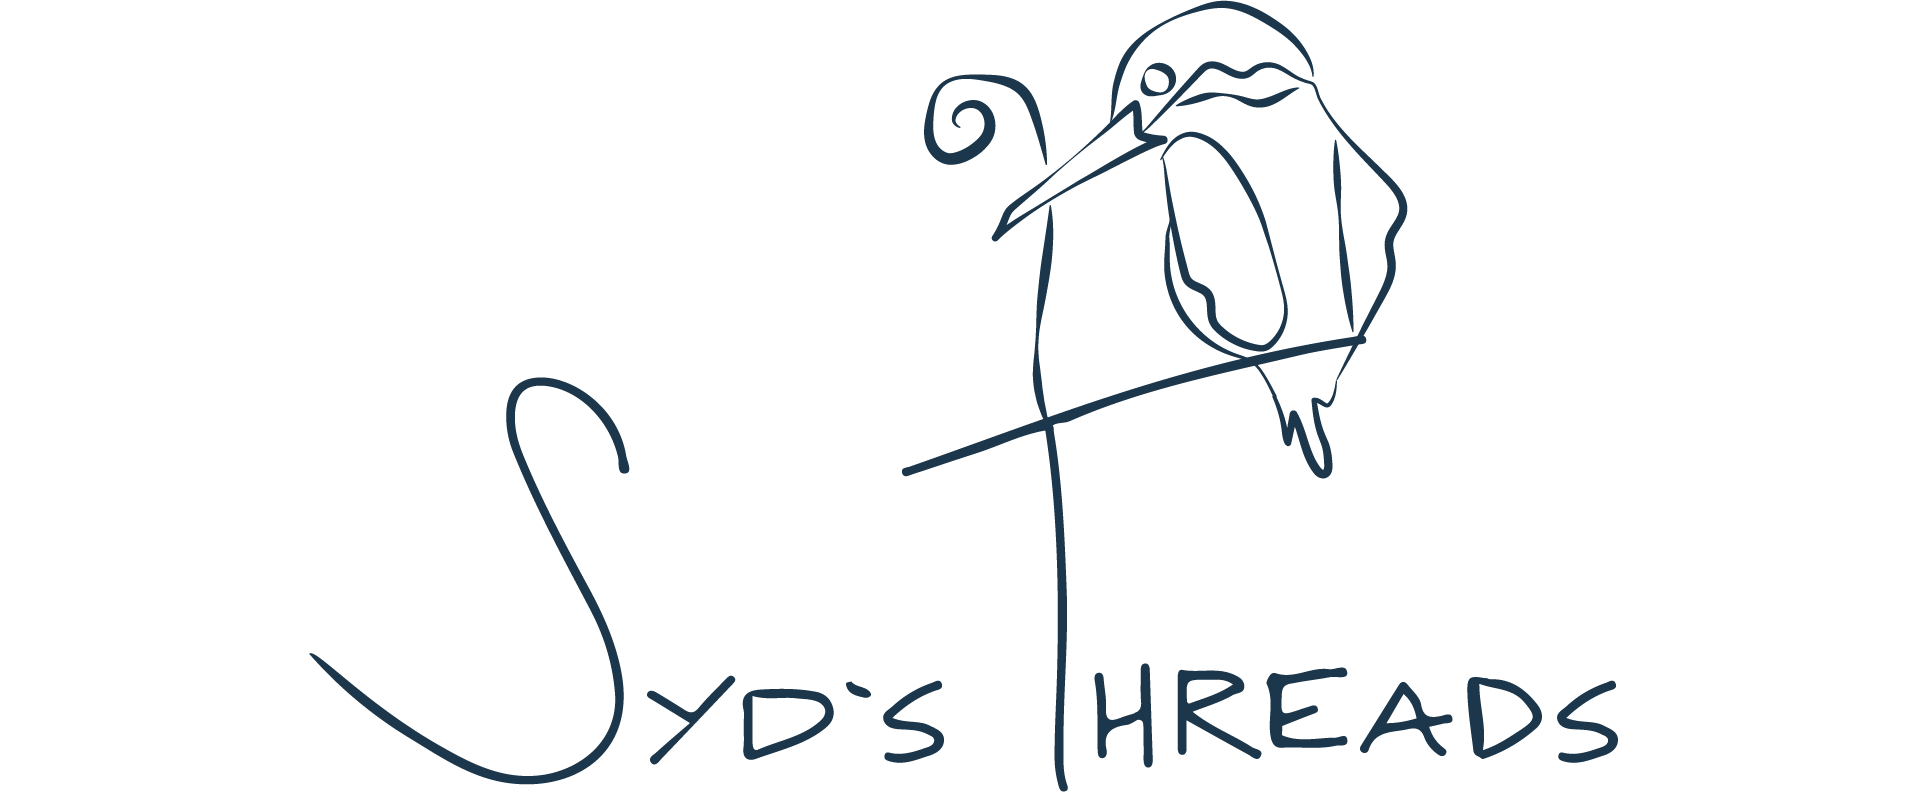 Syd's Threads - Sydney Sogol - Company Logo